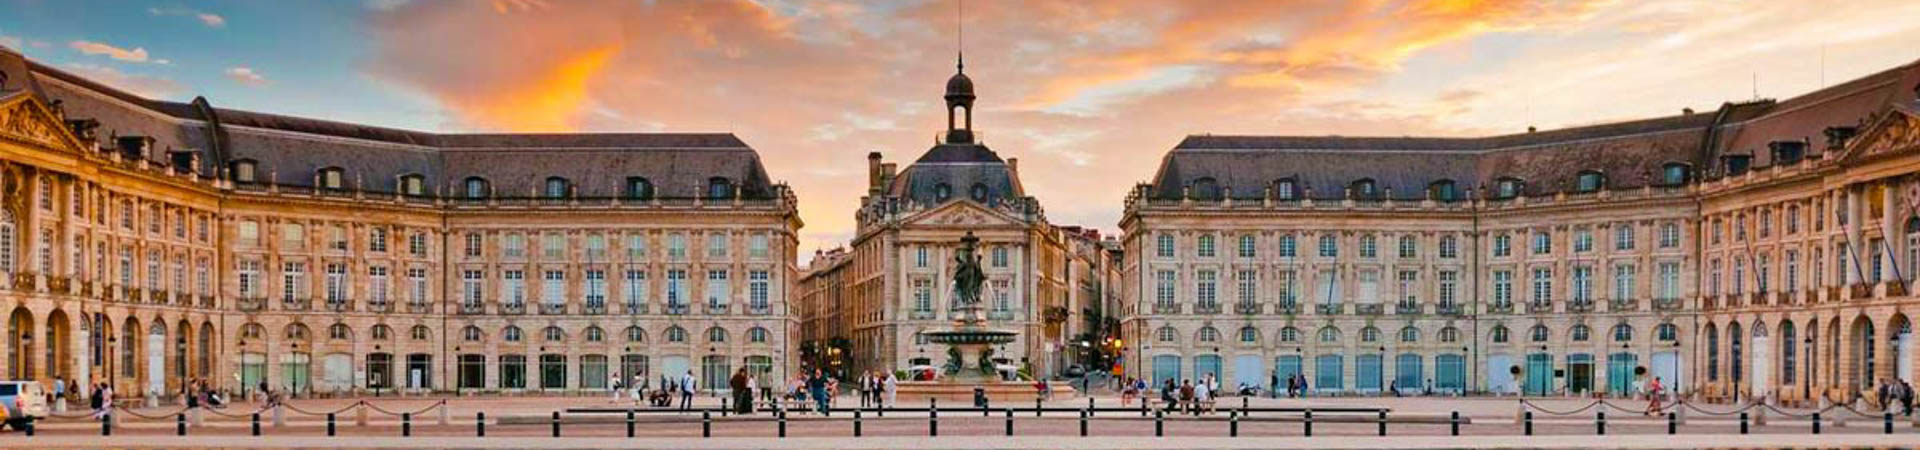 Palace de la Bourse - Bordeaux (Le Verdon), France